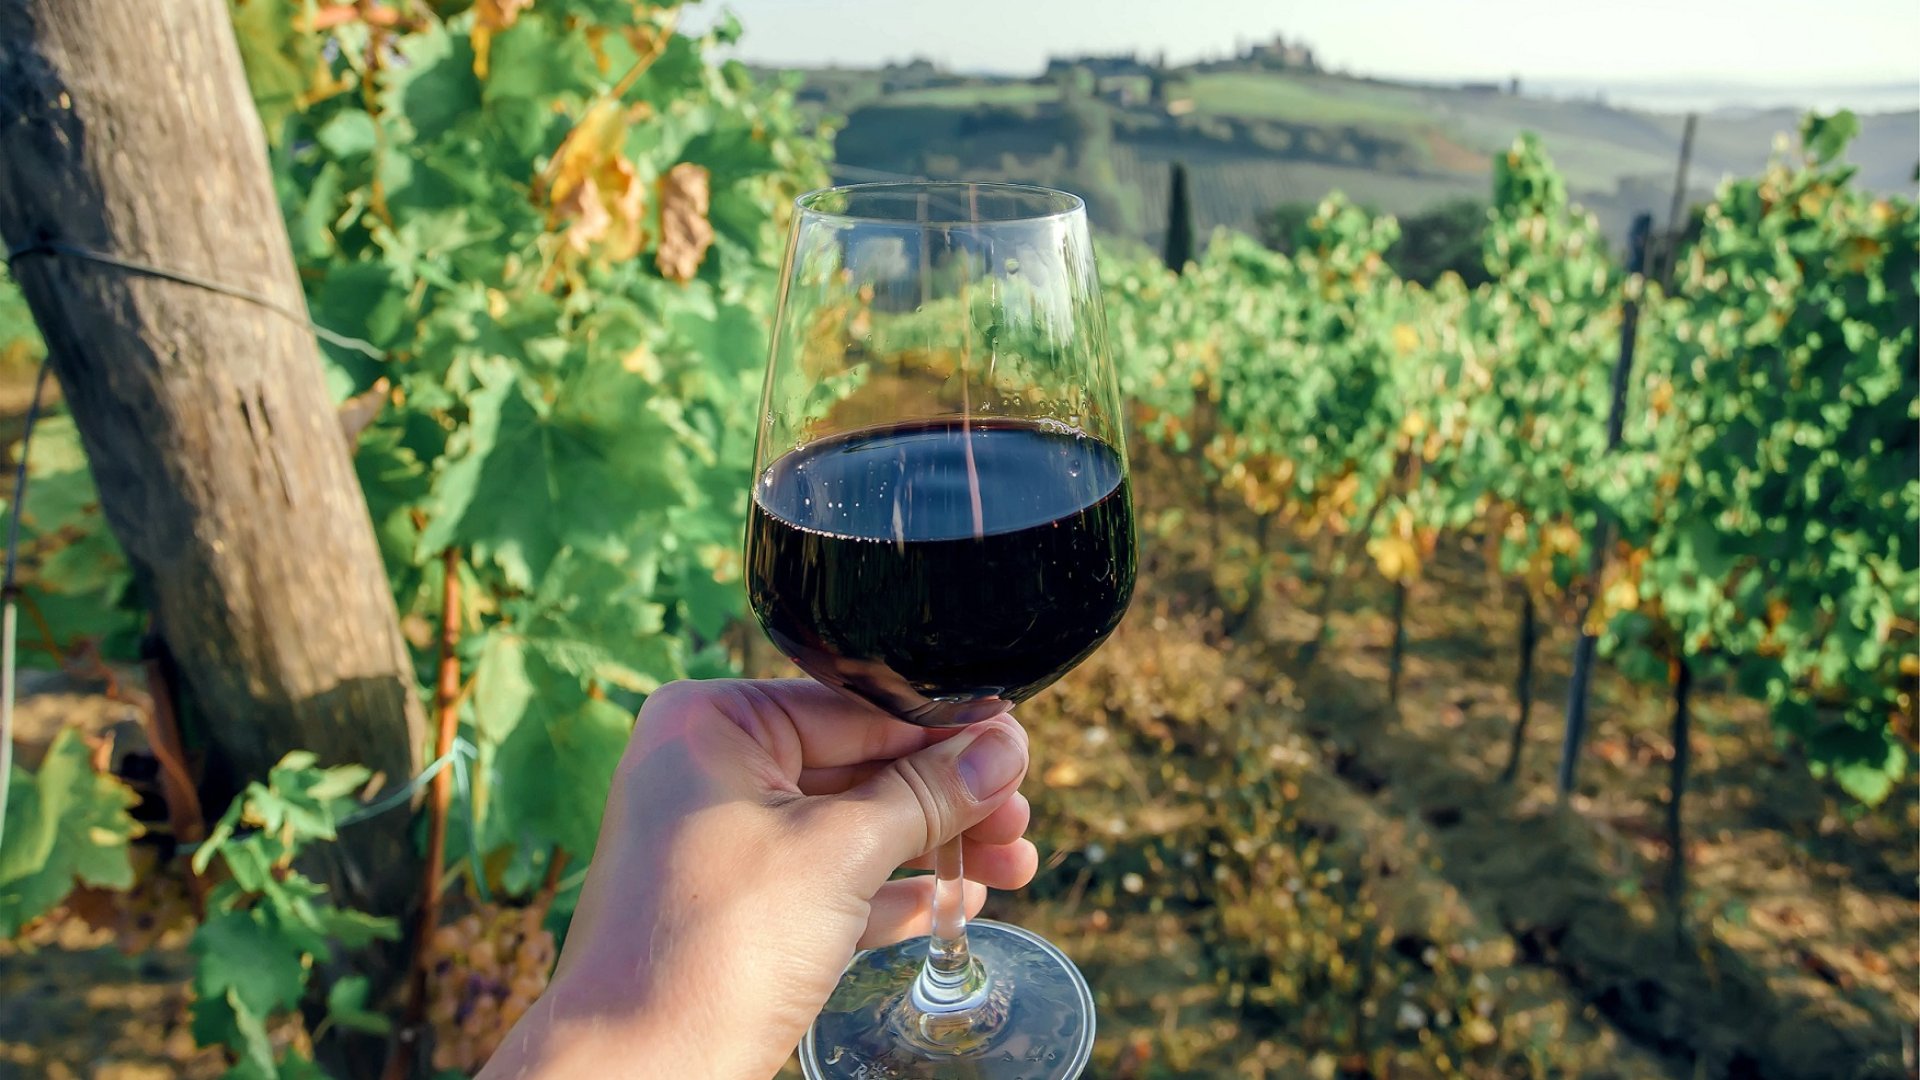 Tuscan dinner among the vineyards